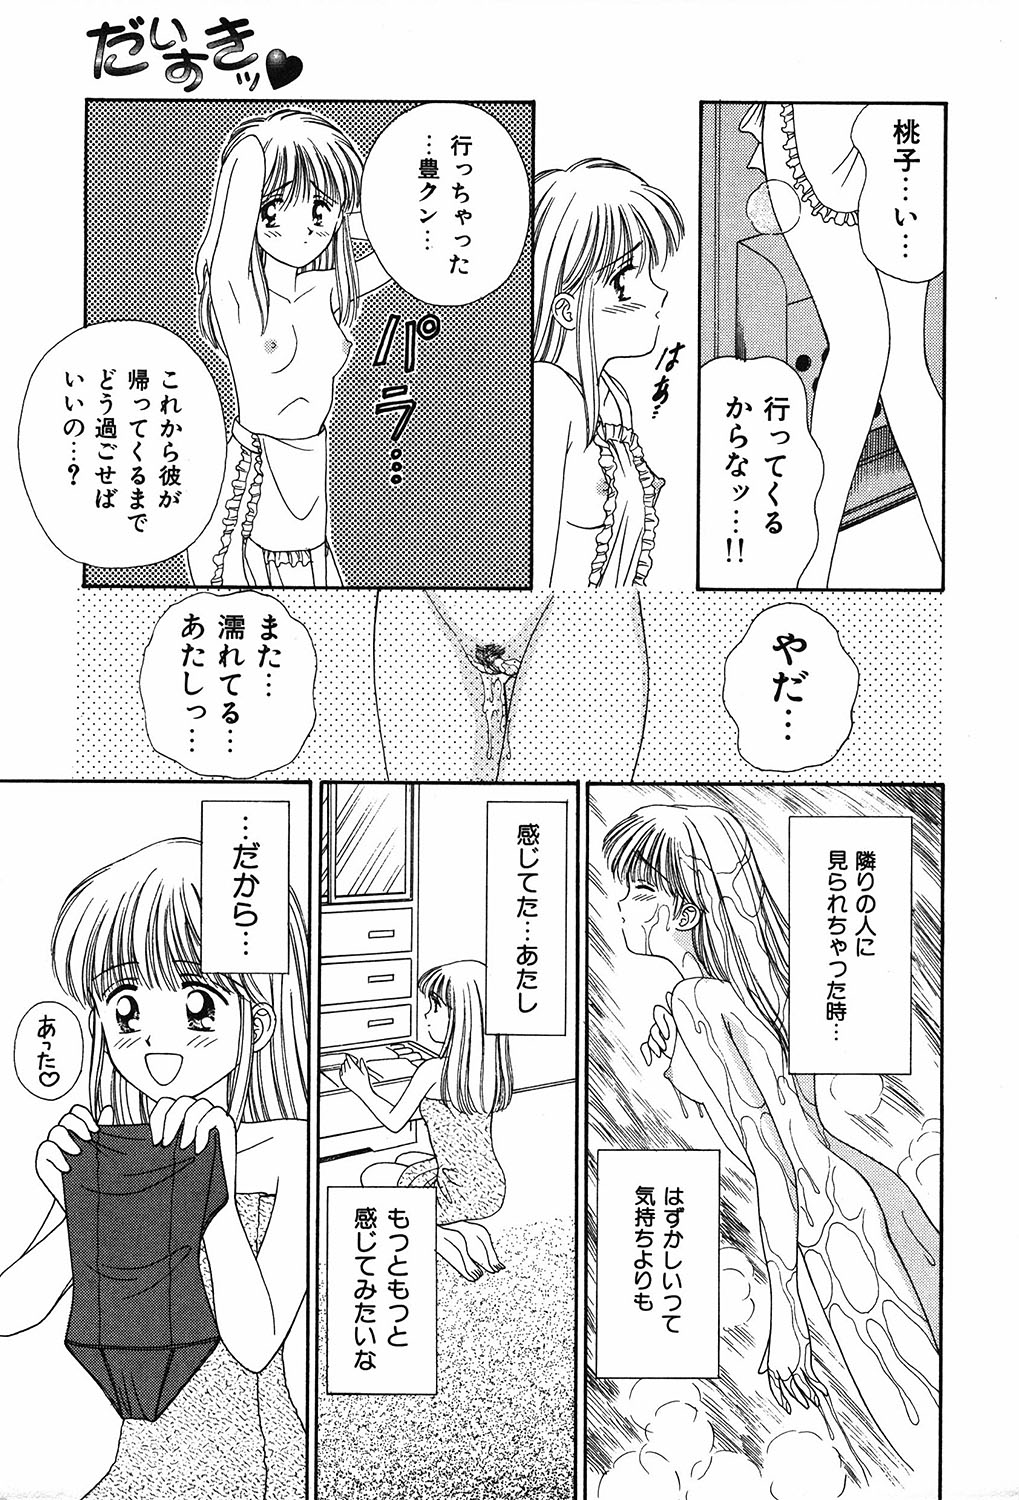 [Ayumi] Daisuki page 9 full